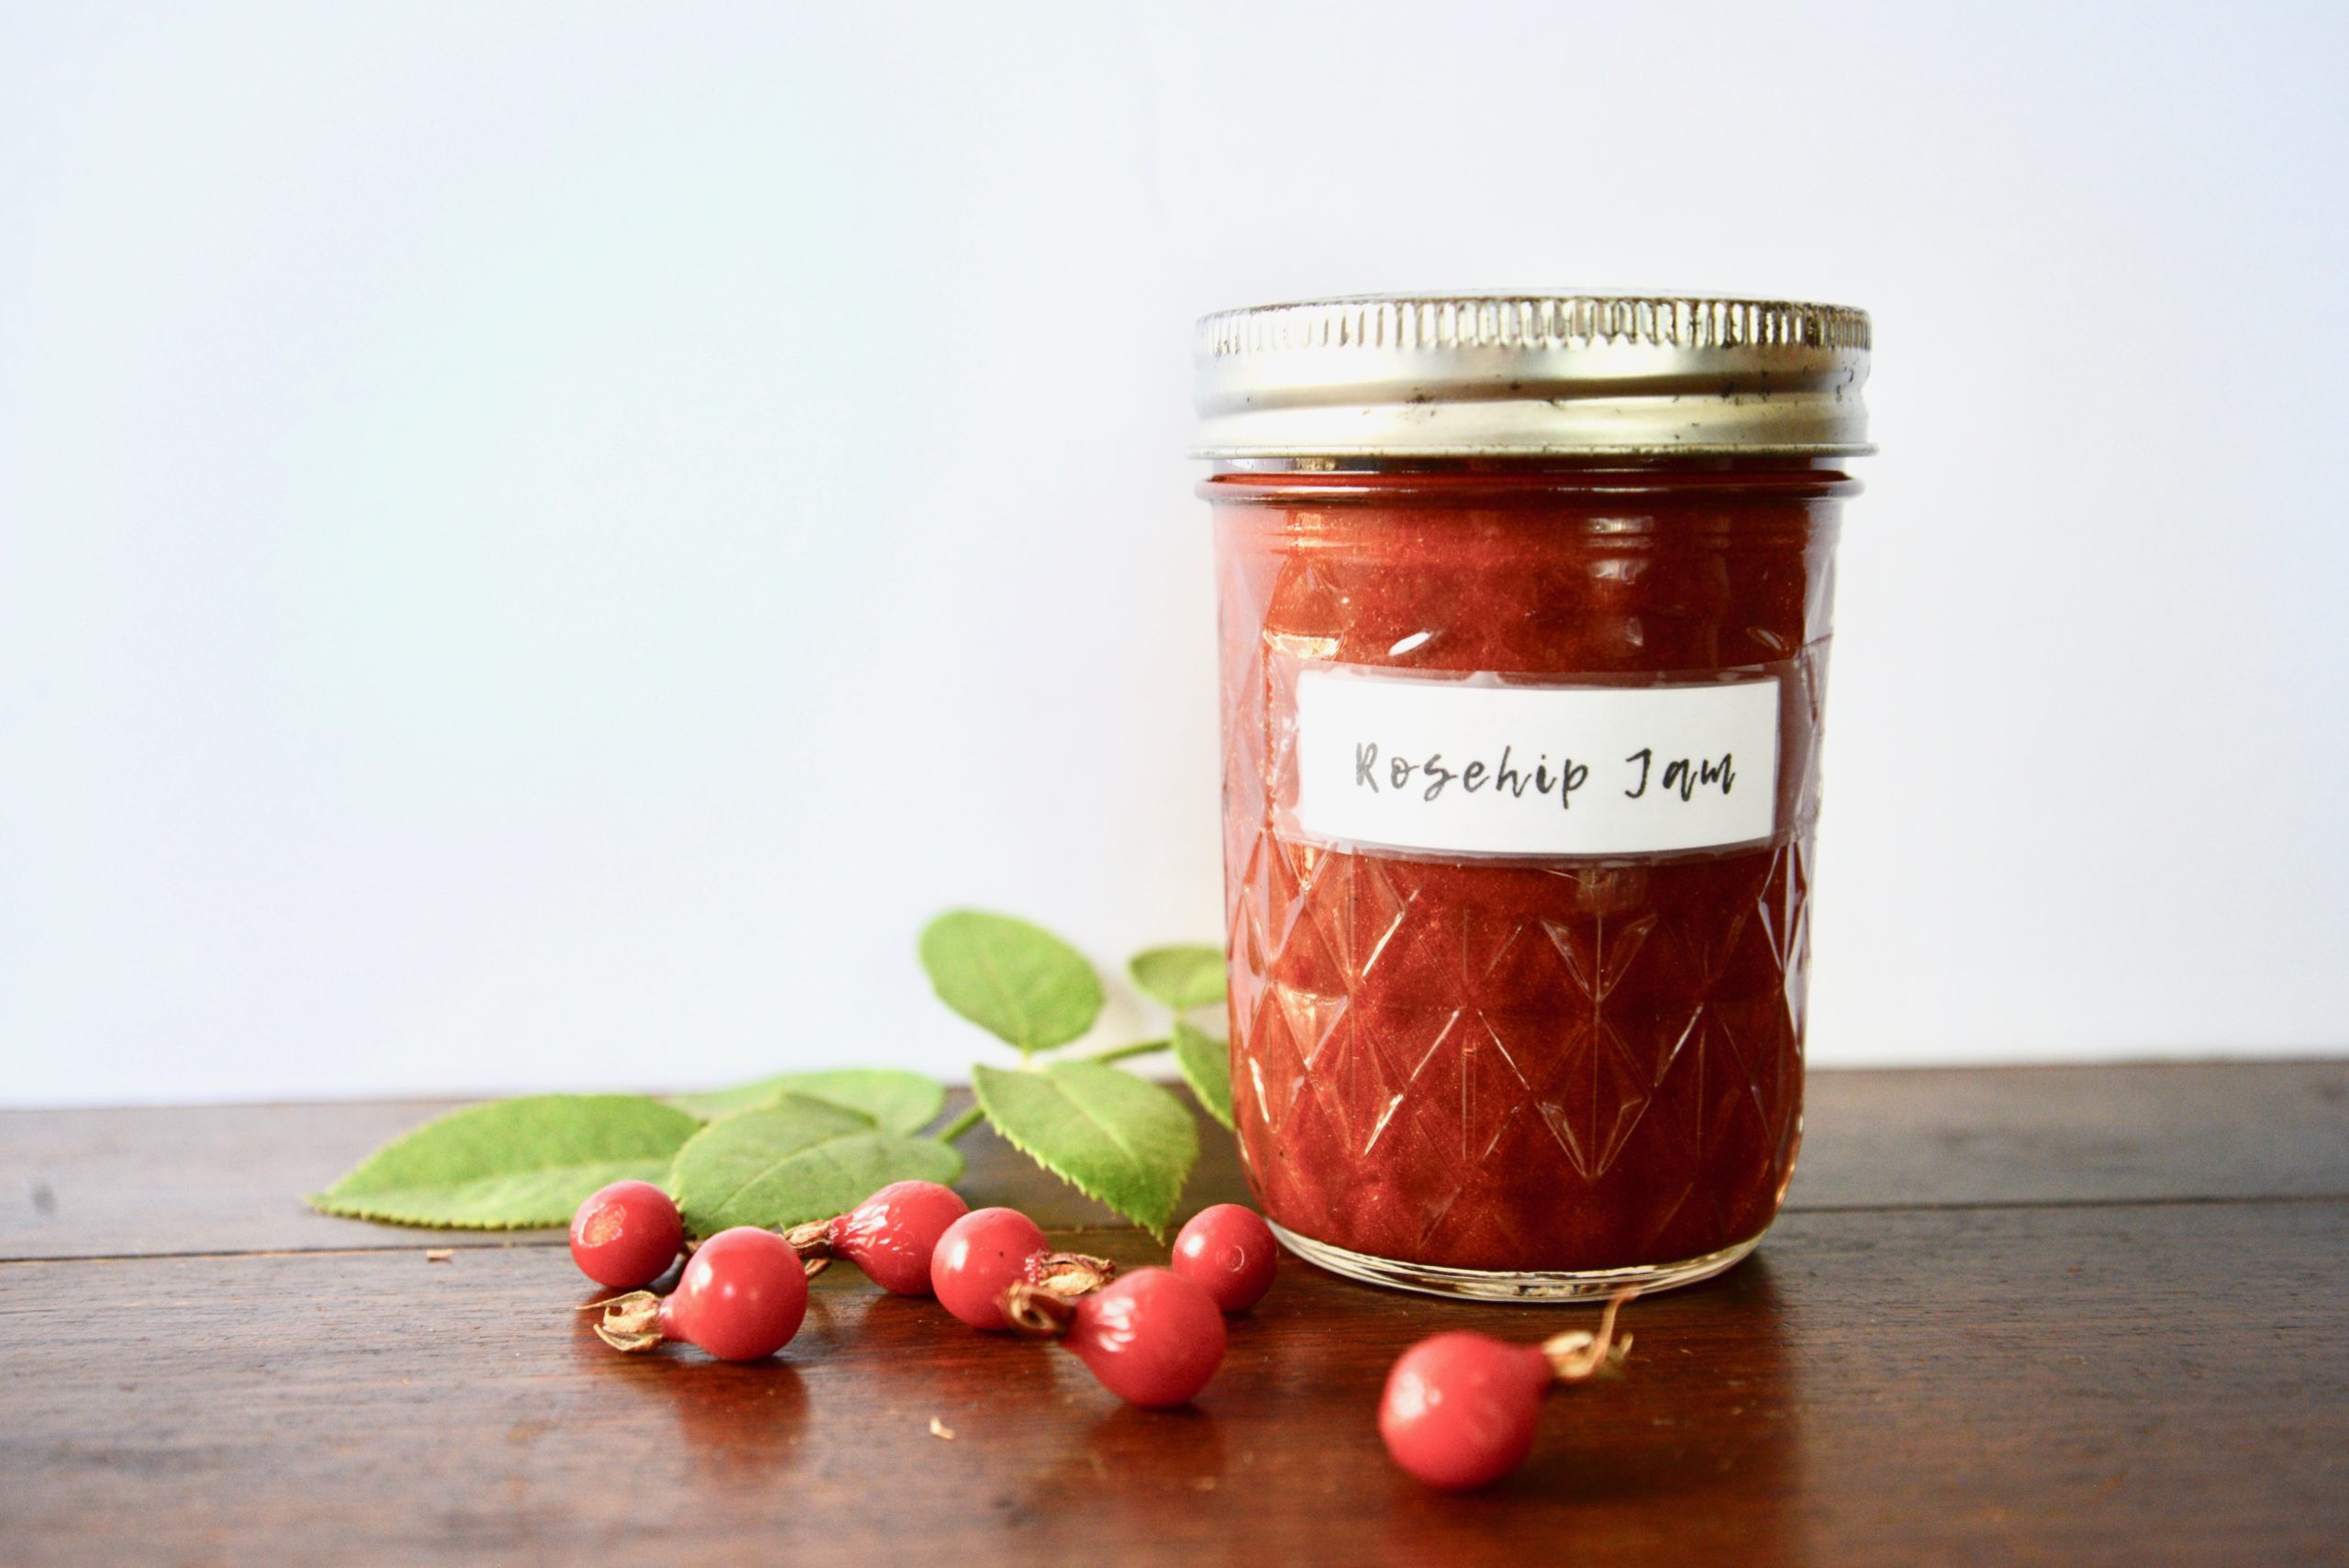 How to Make Rosehip Jam